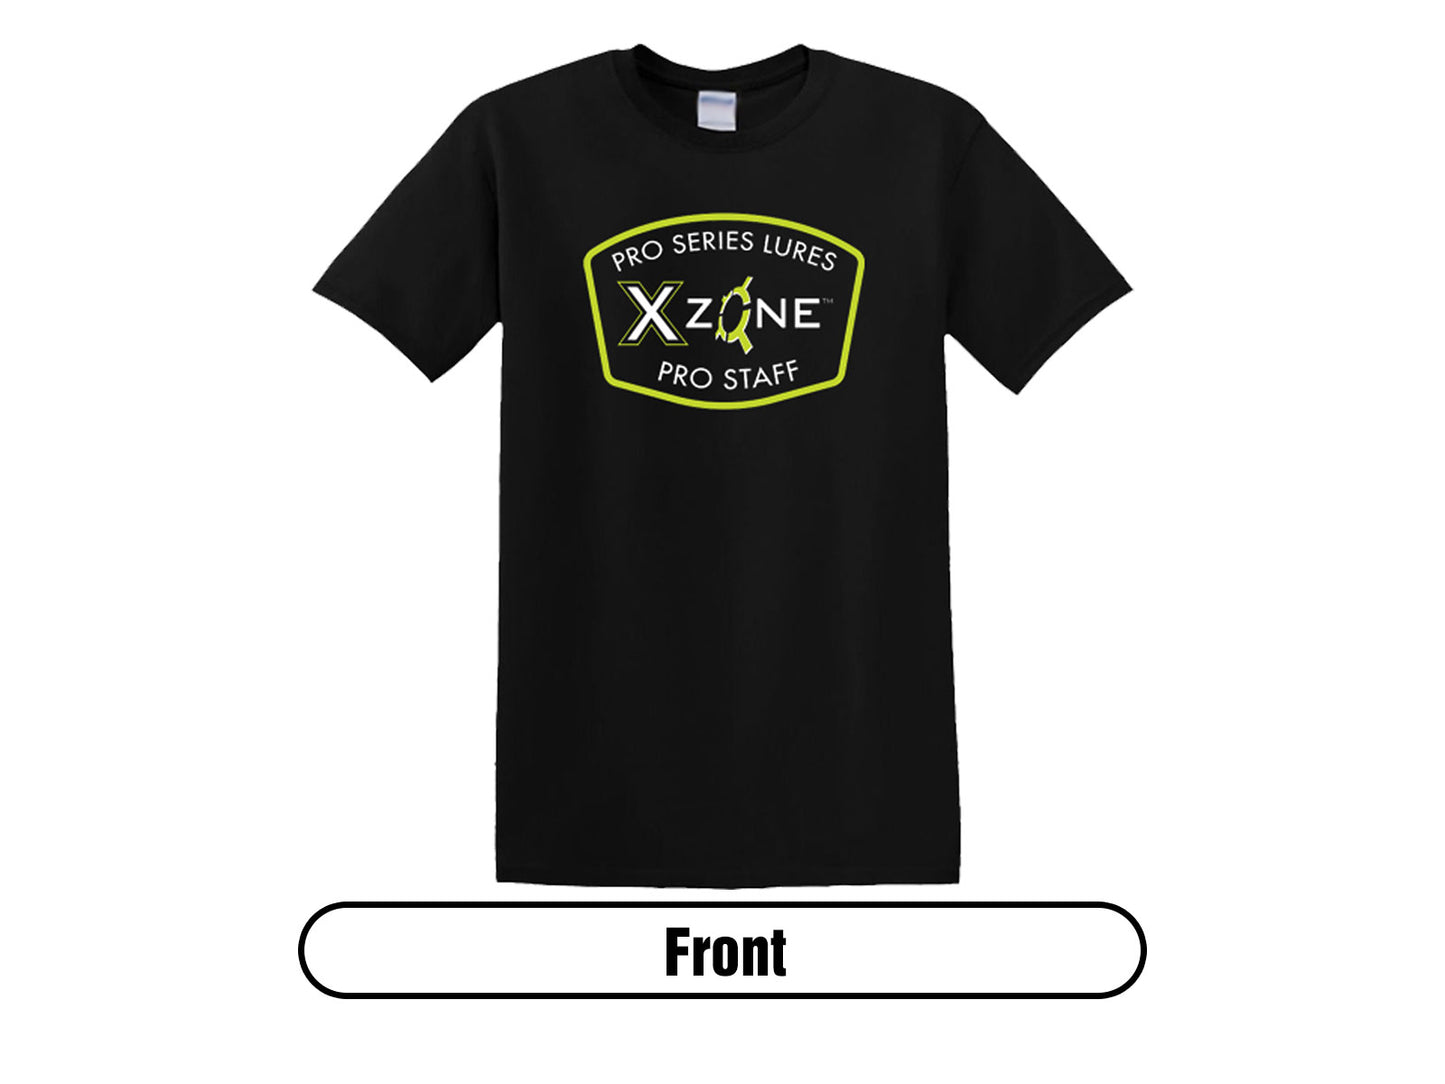 Pro-Series X Zone Pro Staff T-Shirt